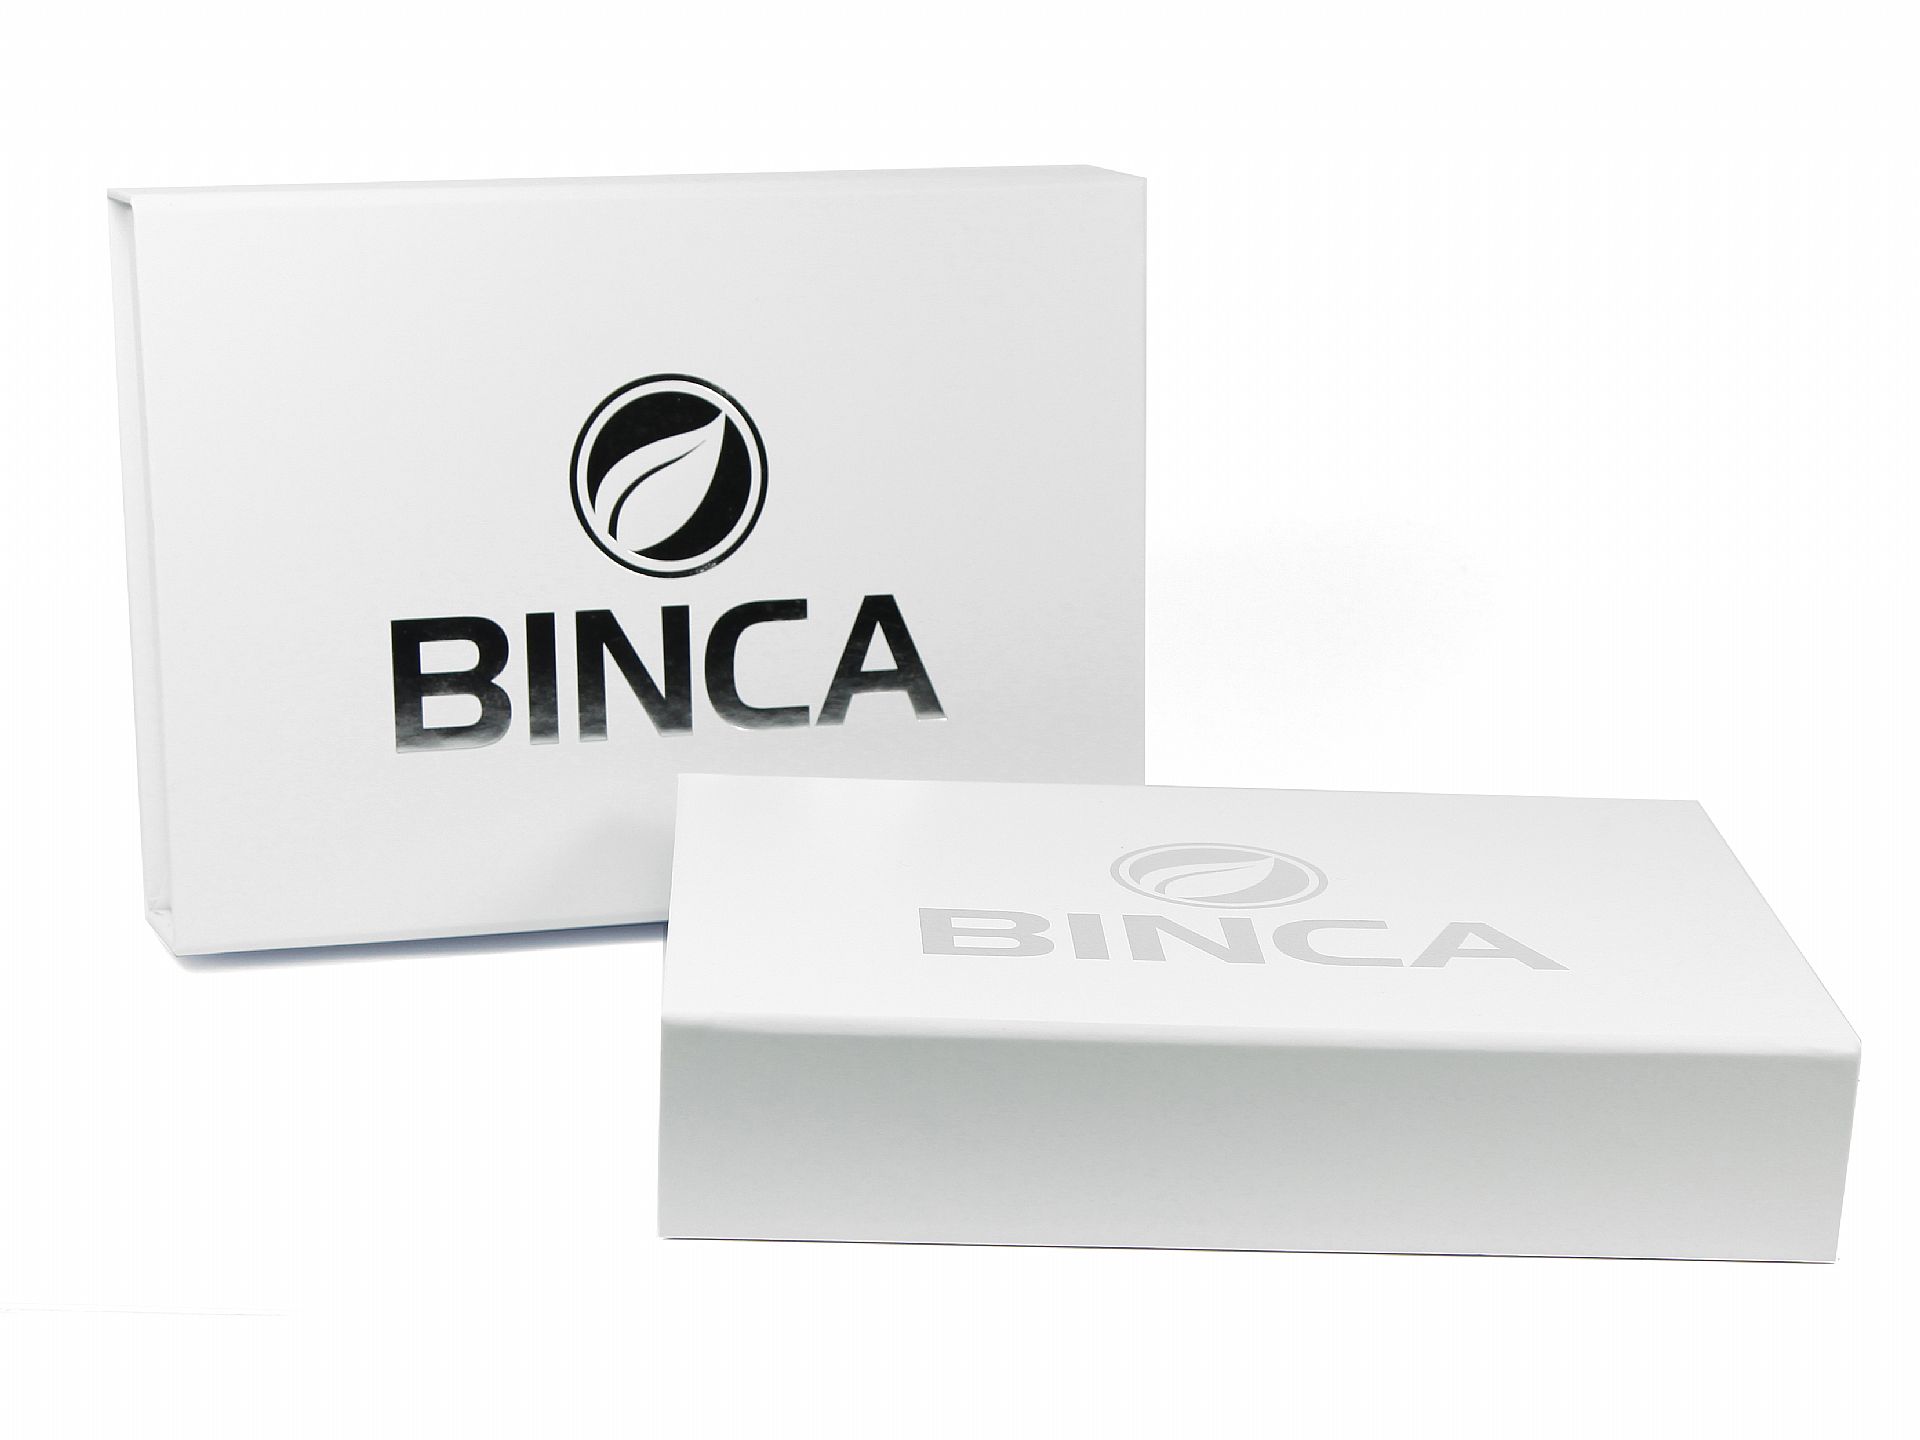 klappbox weiss verpackung logo binca silberprägung hochwertig